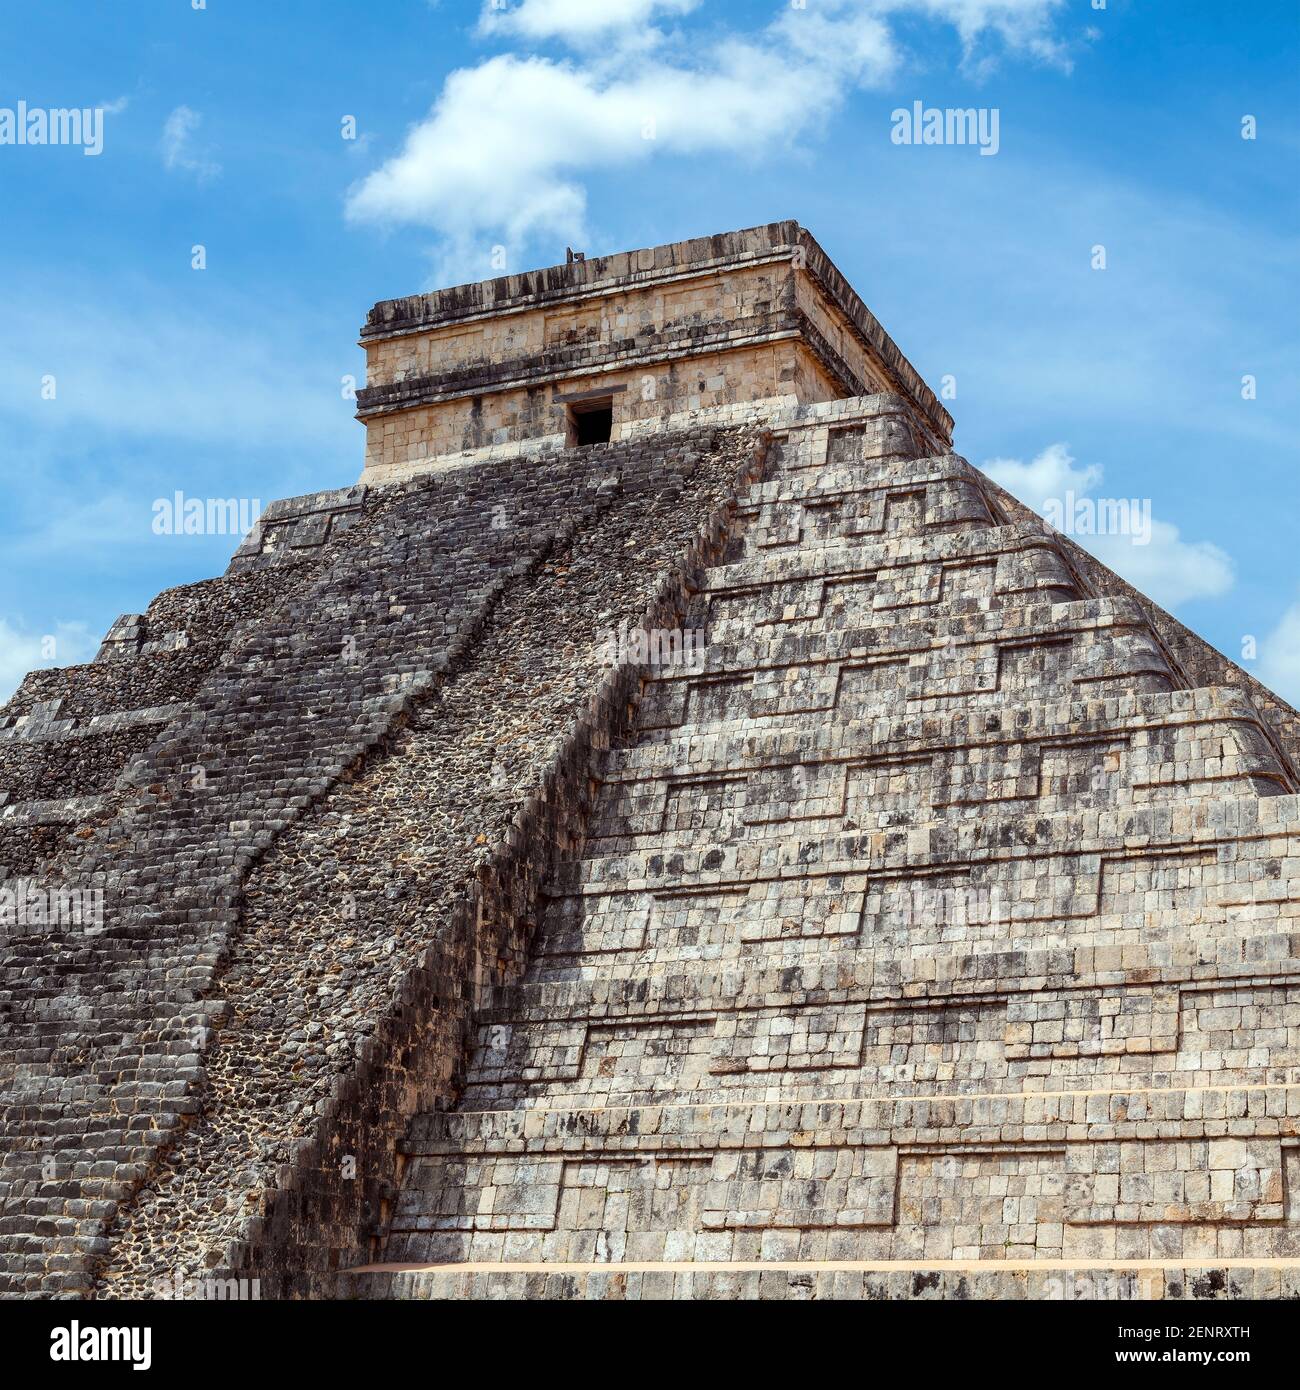 Place proche de la pyramide des Kukulkan maya, Chichen Itza, Yucatan, Mexique. Banque D'Images